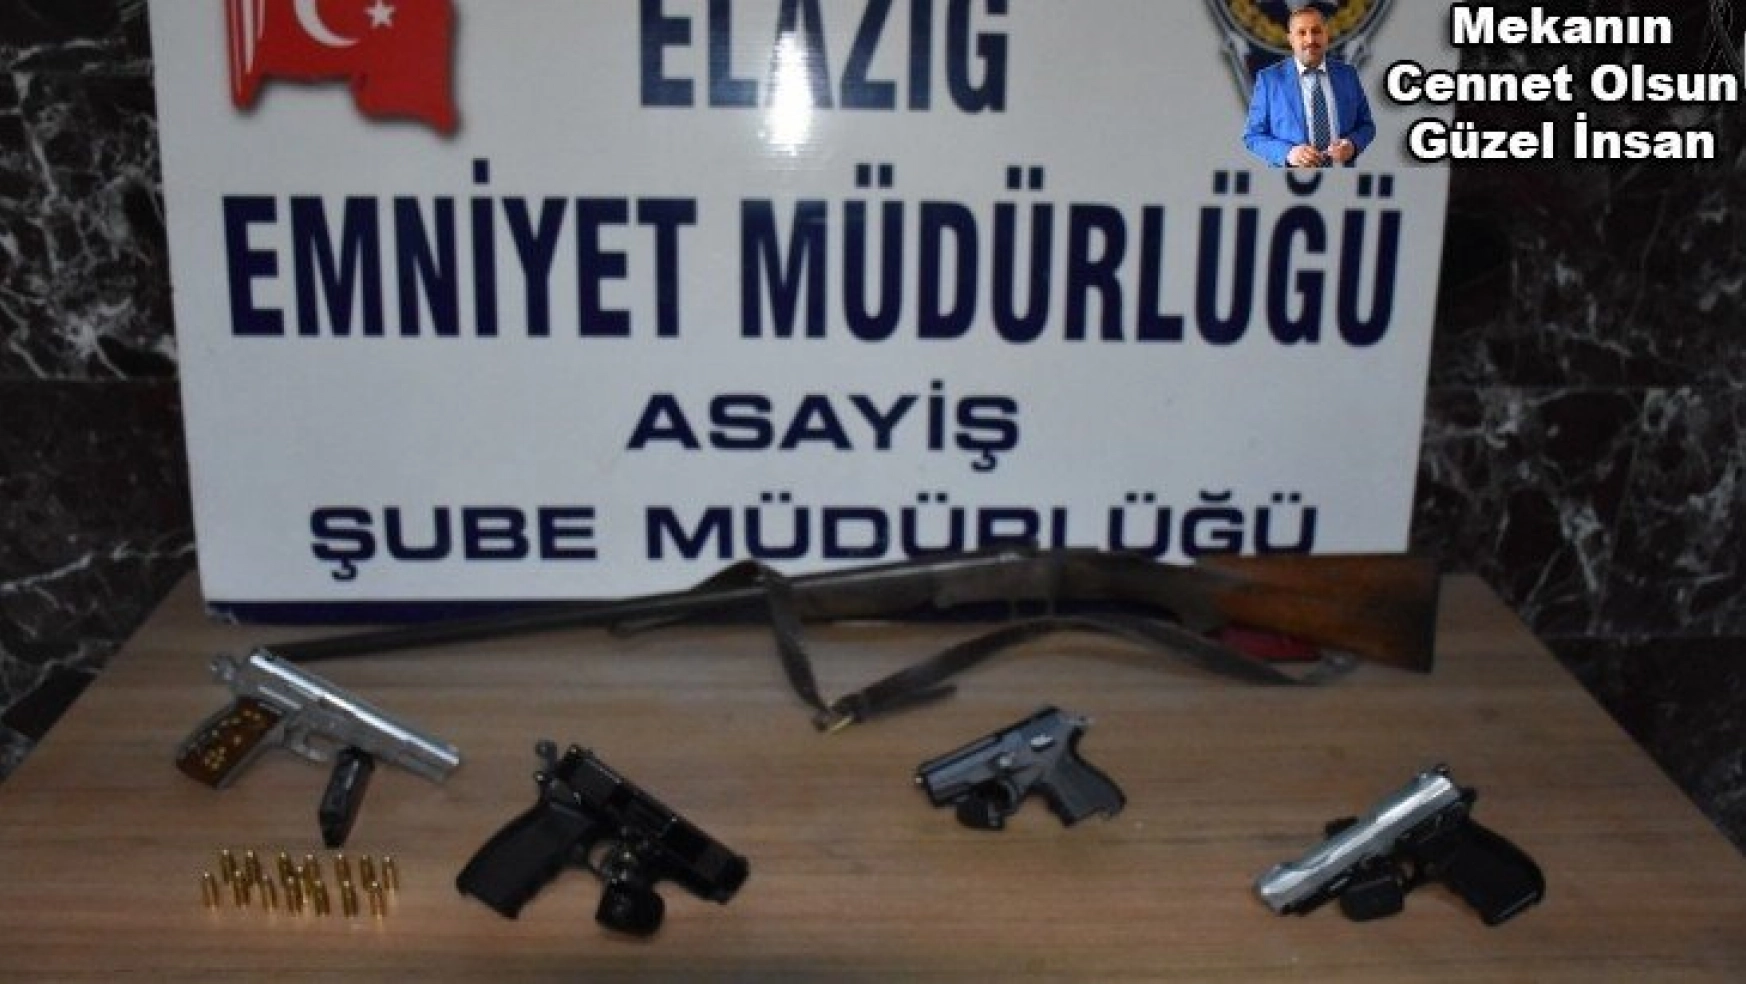 Elazığ'da çeşitli suçlardan aranıp yakalanan 30 şüpheli tutuklandı